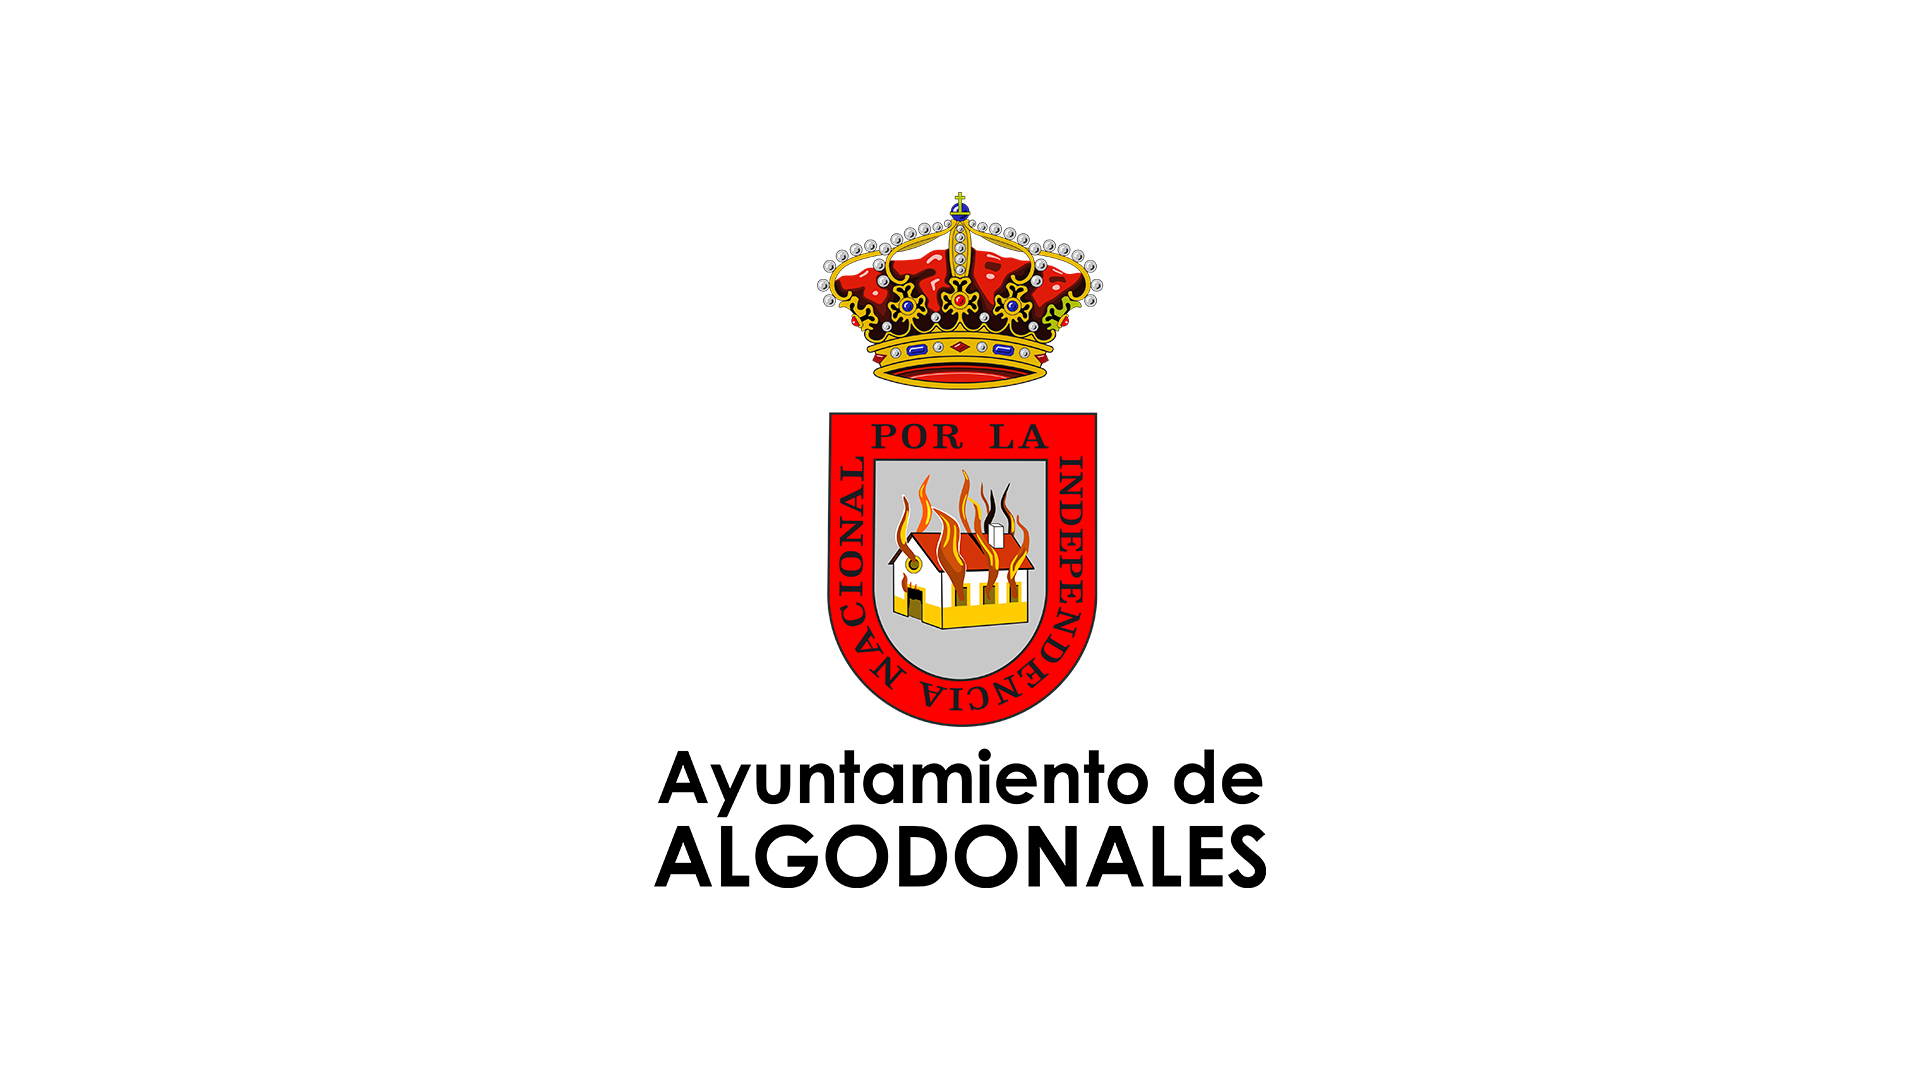 (c) Algodonales.es